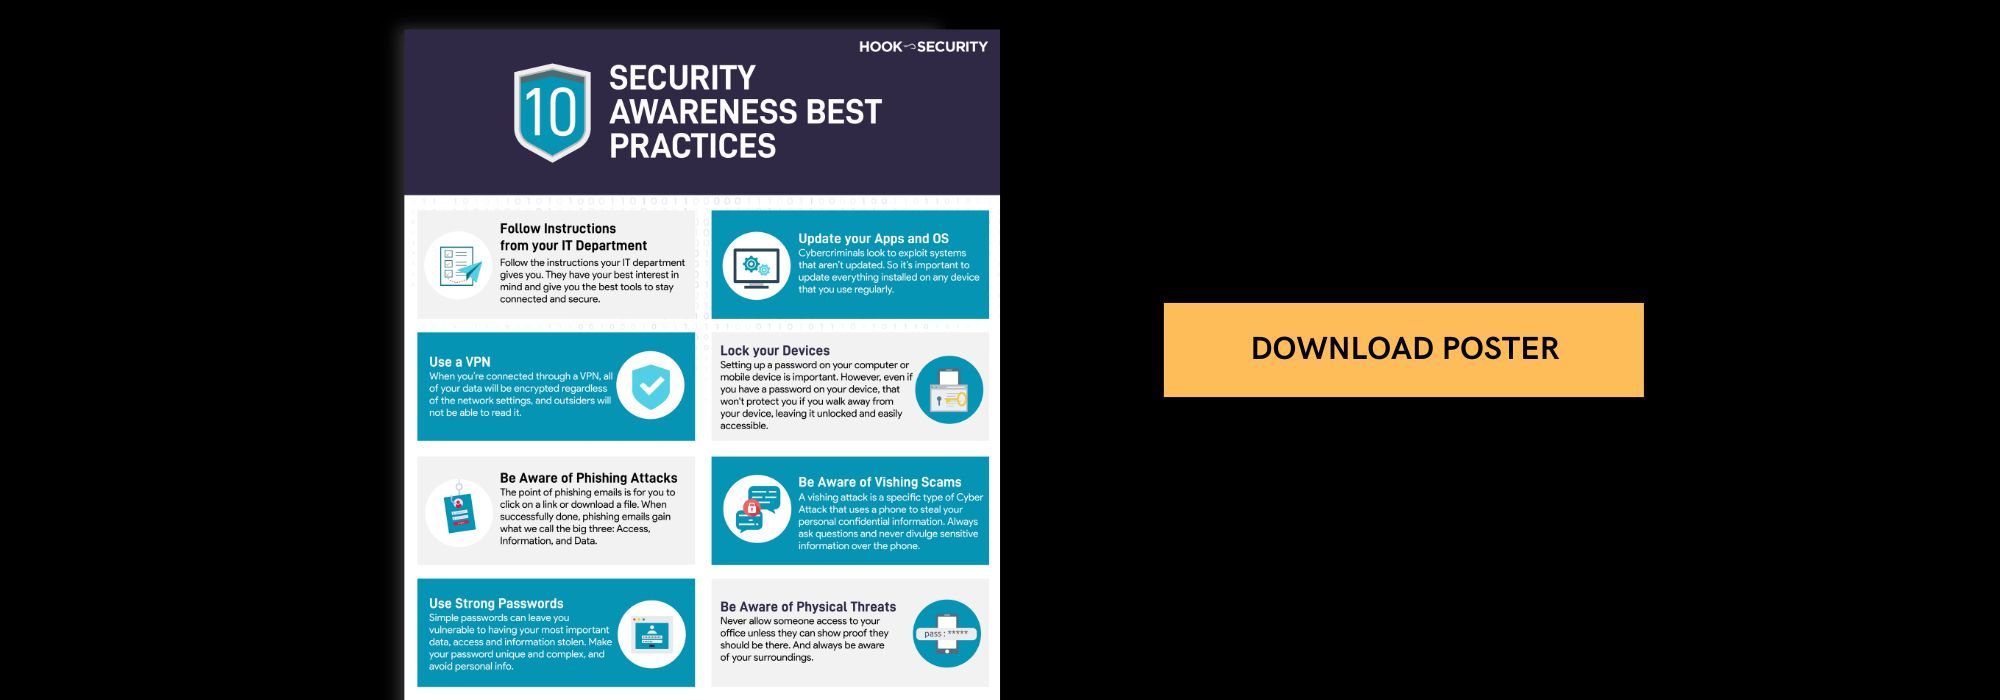 10 Security Awareness Best Practices